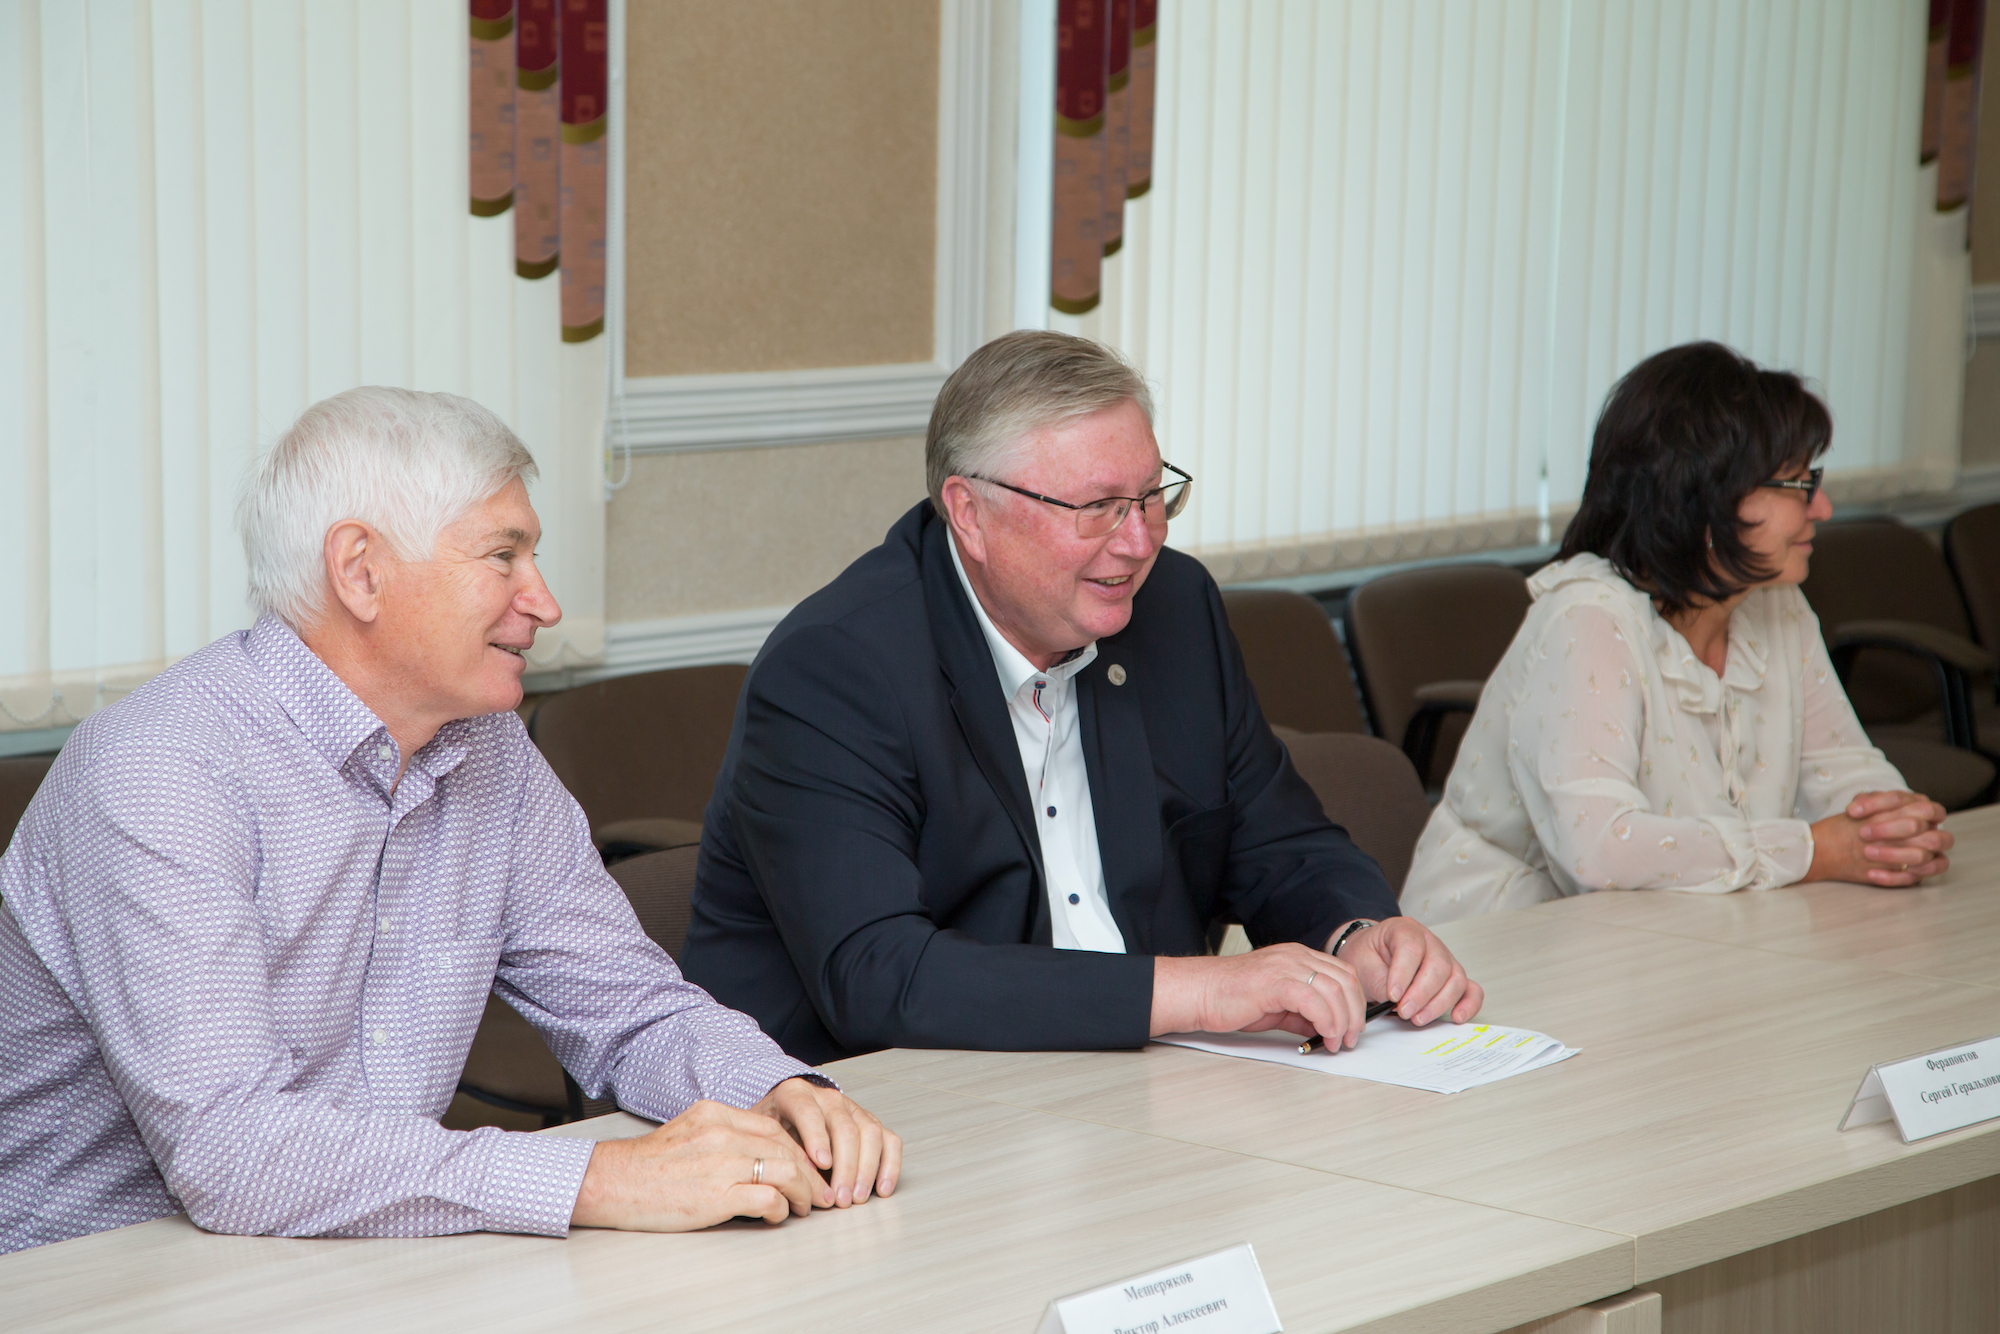 25 лет исполнилось Совету руководителей Железнодорожного района г. Барнаула